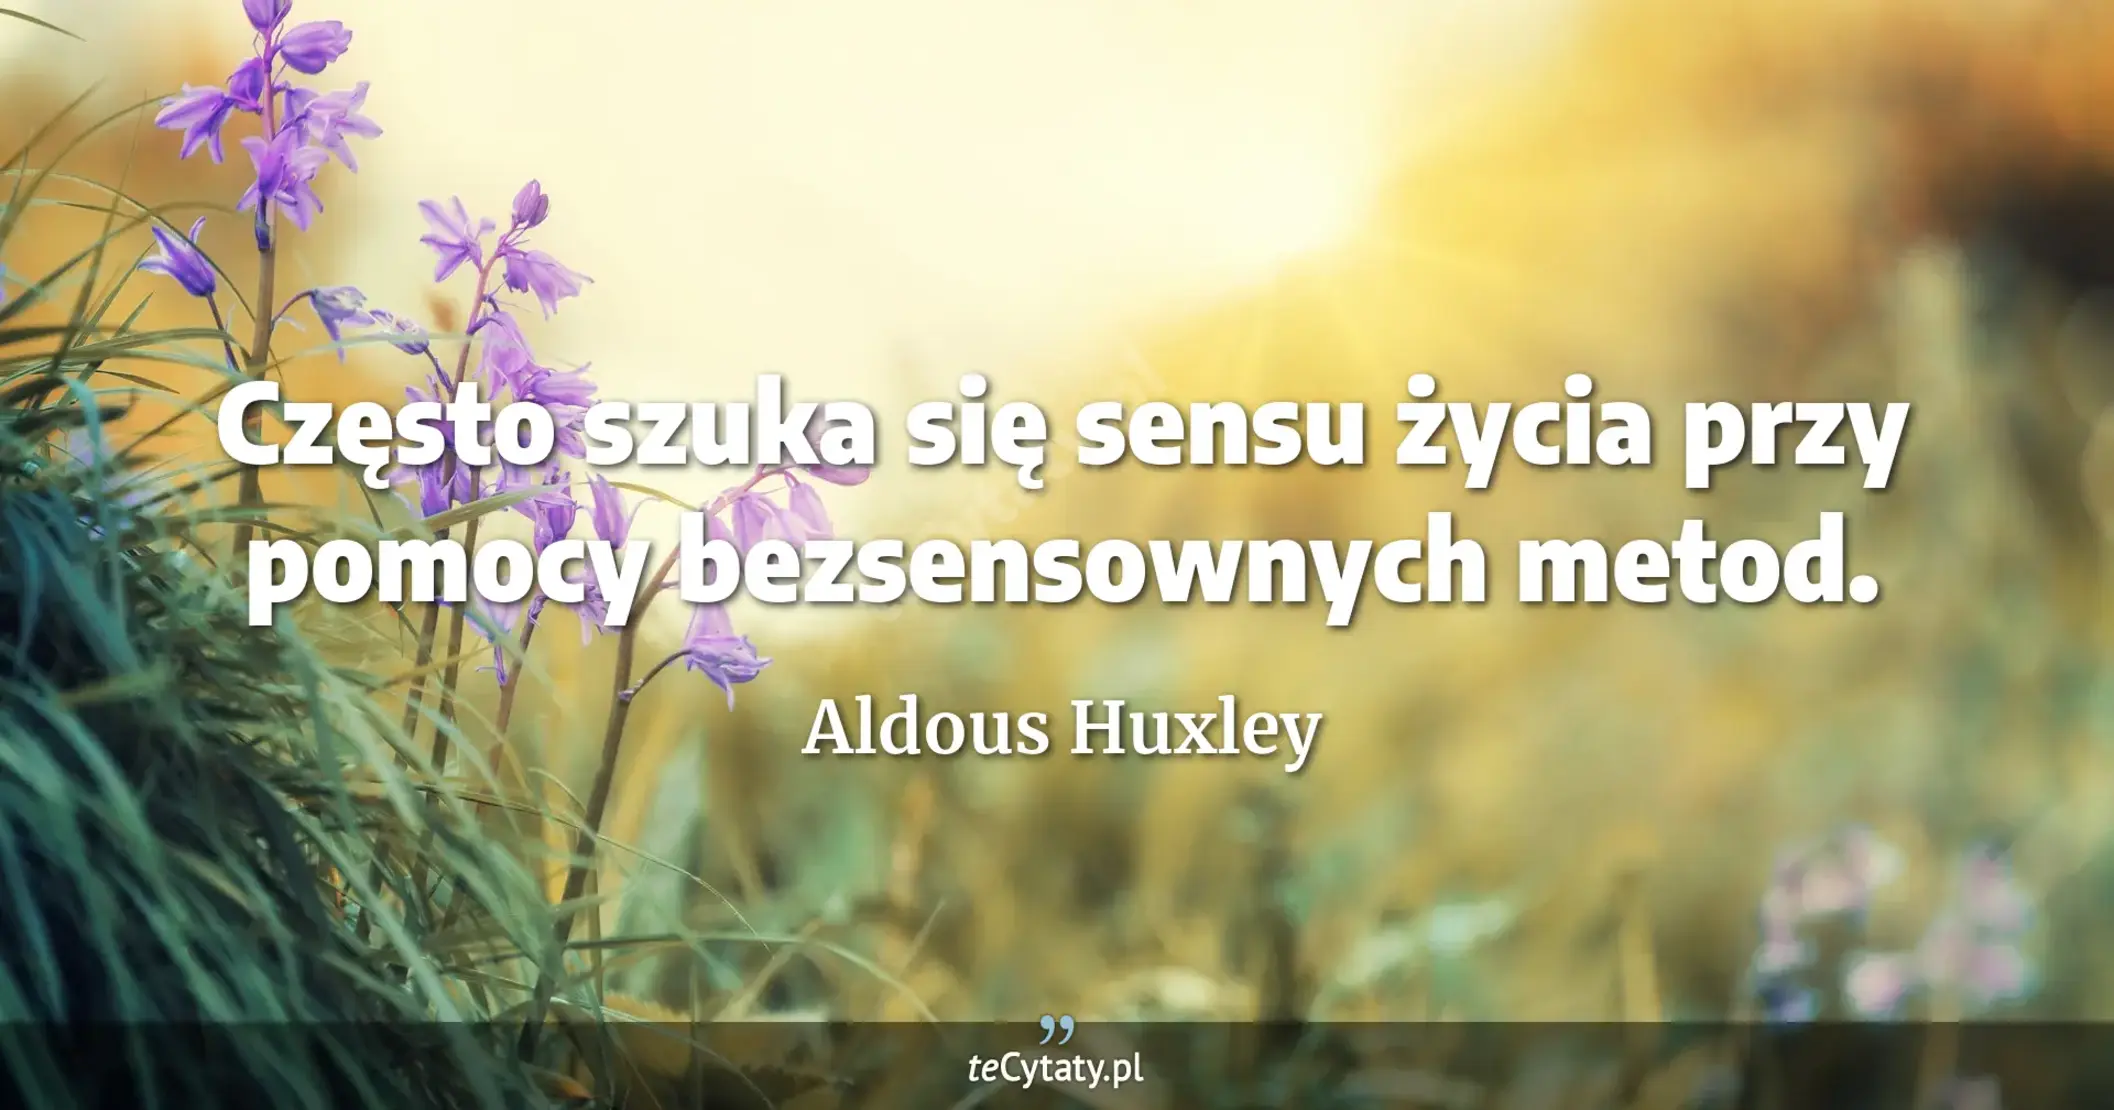 Często szuka się sensu życia przy pomocy bezsensownych metod. - Aldous Huxley